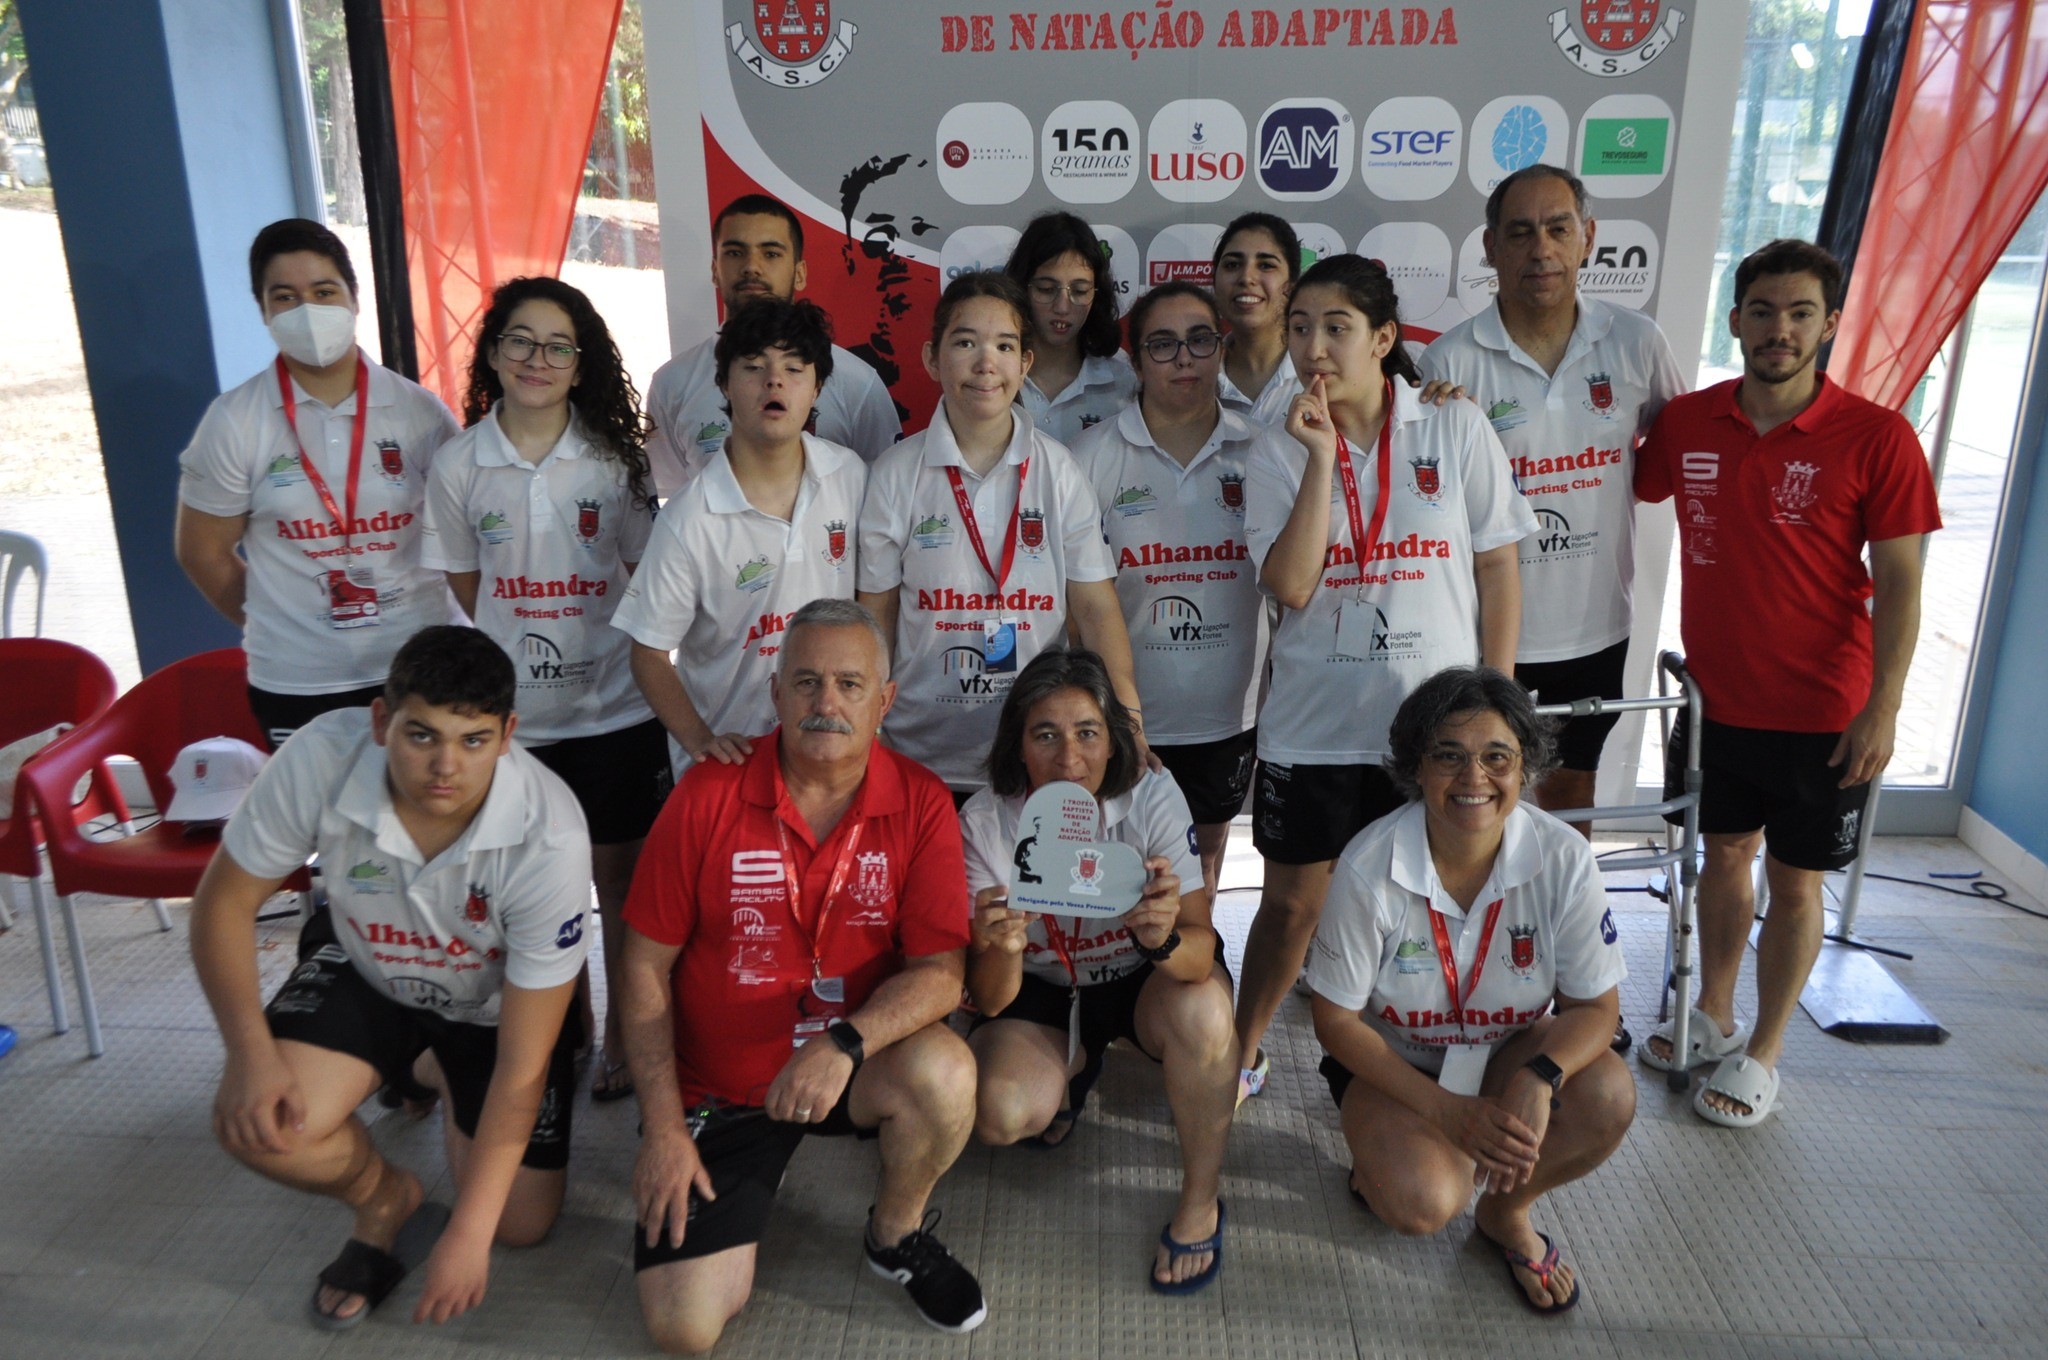 Equipa de Natação Adaptada do Alhandra SC com várias medalhas no Campeonato Nacional